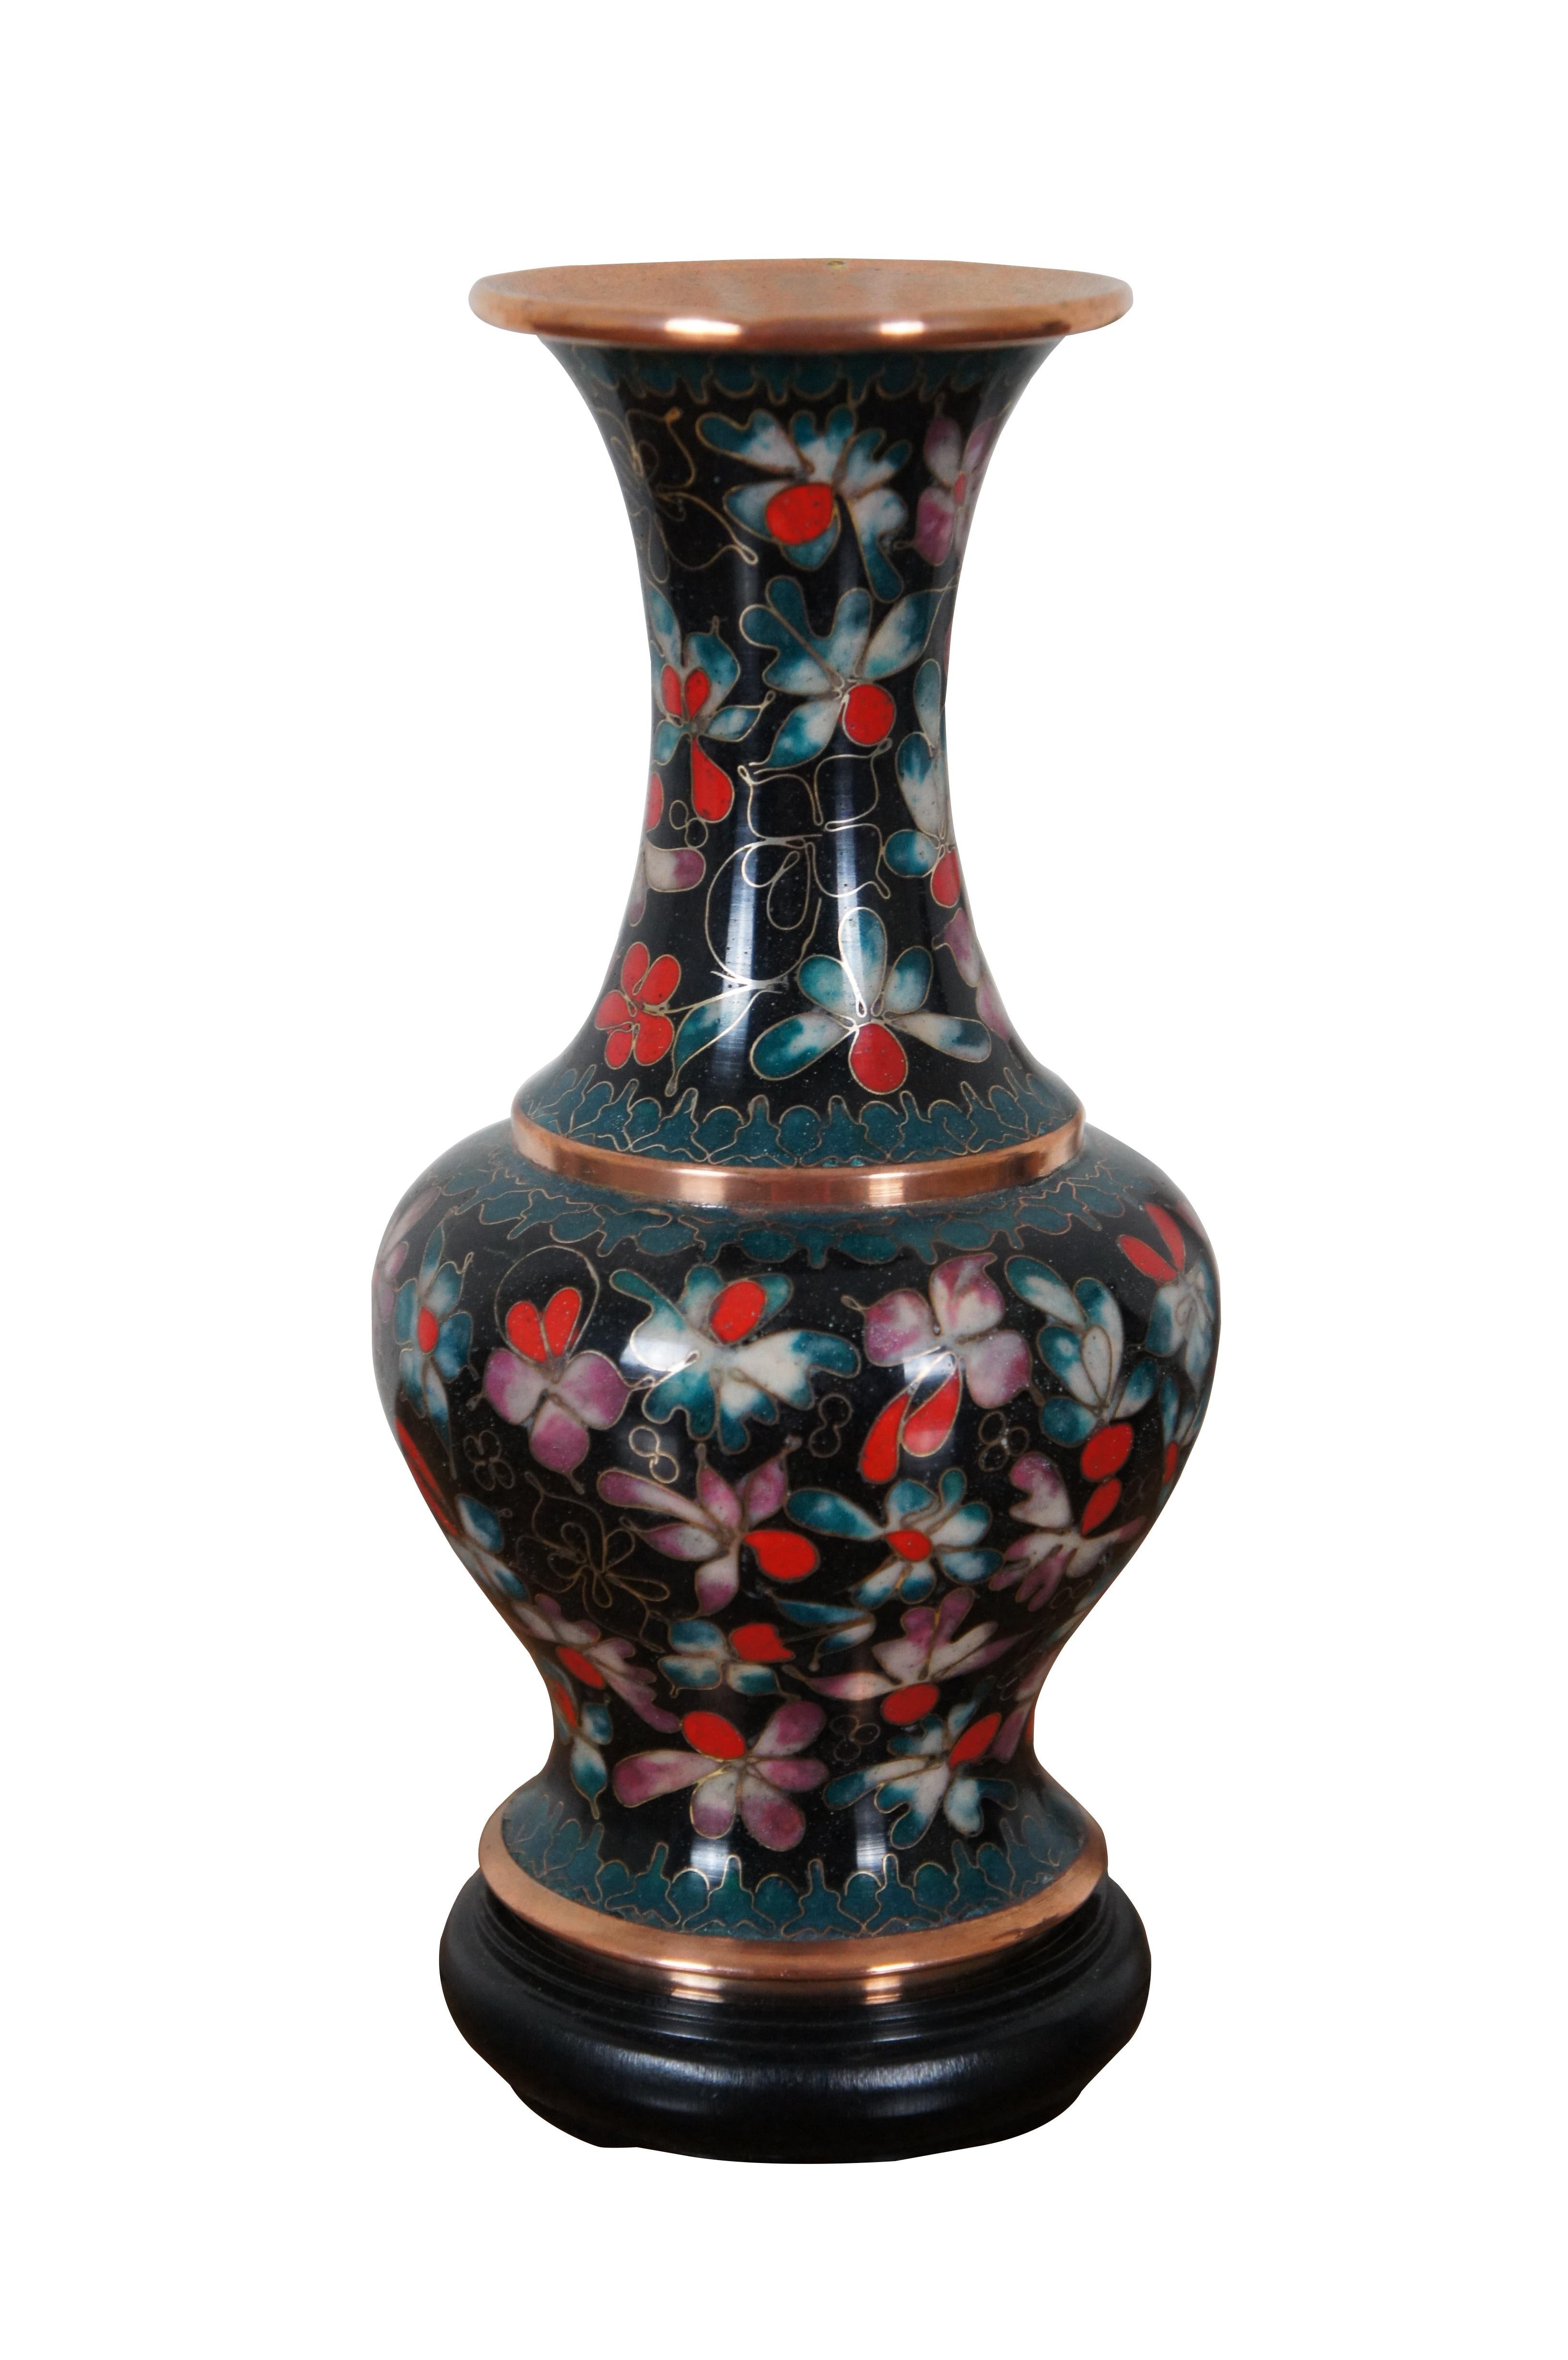 Zwei emaillierte Cloisonné-Vasen oder Urnen von Robert Kuo mit Blumenmotiv und ausgestelltem Deckel.  China Cloison von KUO.  Inklusive Sockel/Ständer.

Abmessungen:
4,25